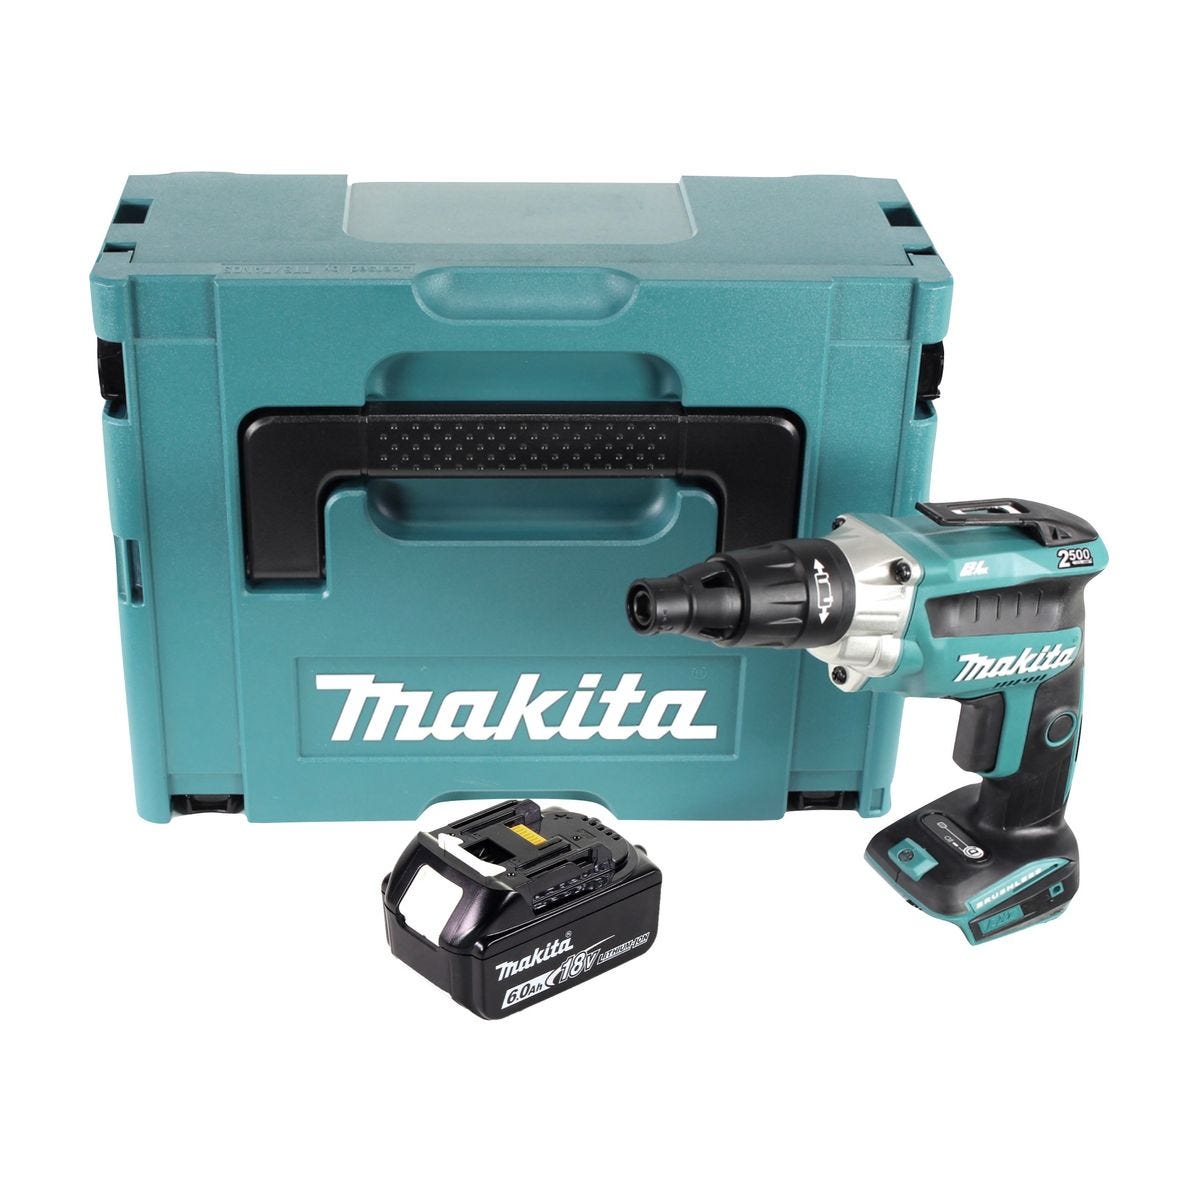 Makita DFS 251 G1J Visseuse pour cloisons sèches sans fil Brushless 18V + 1x Batterie 6,0Ah + Coffret Makpac - sans chargeur 0